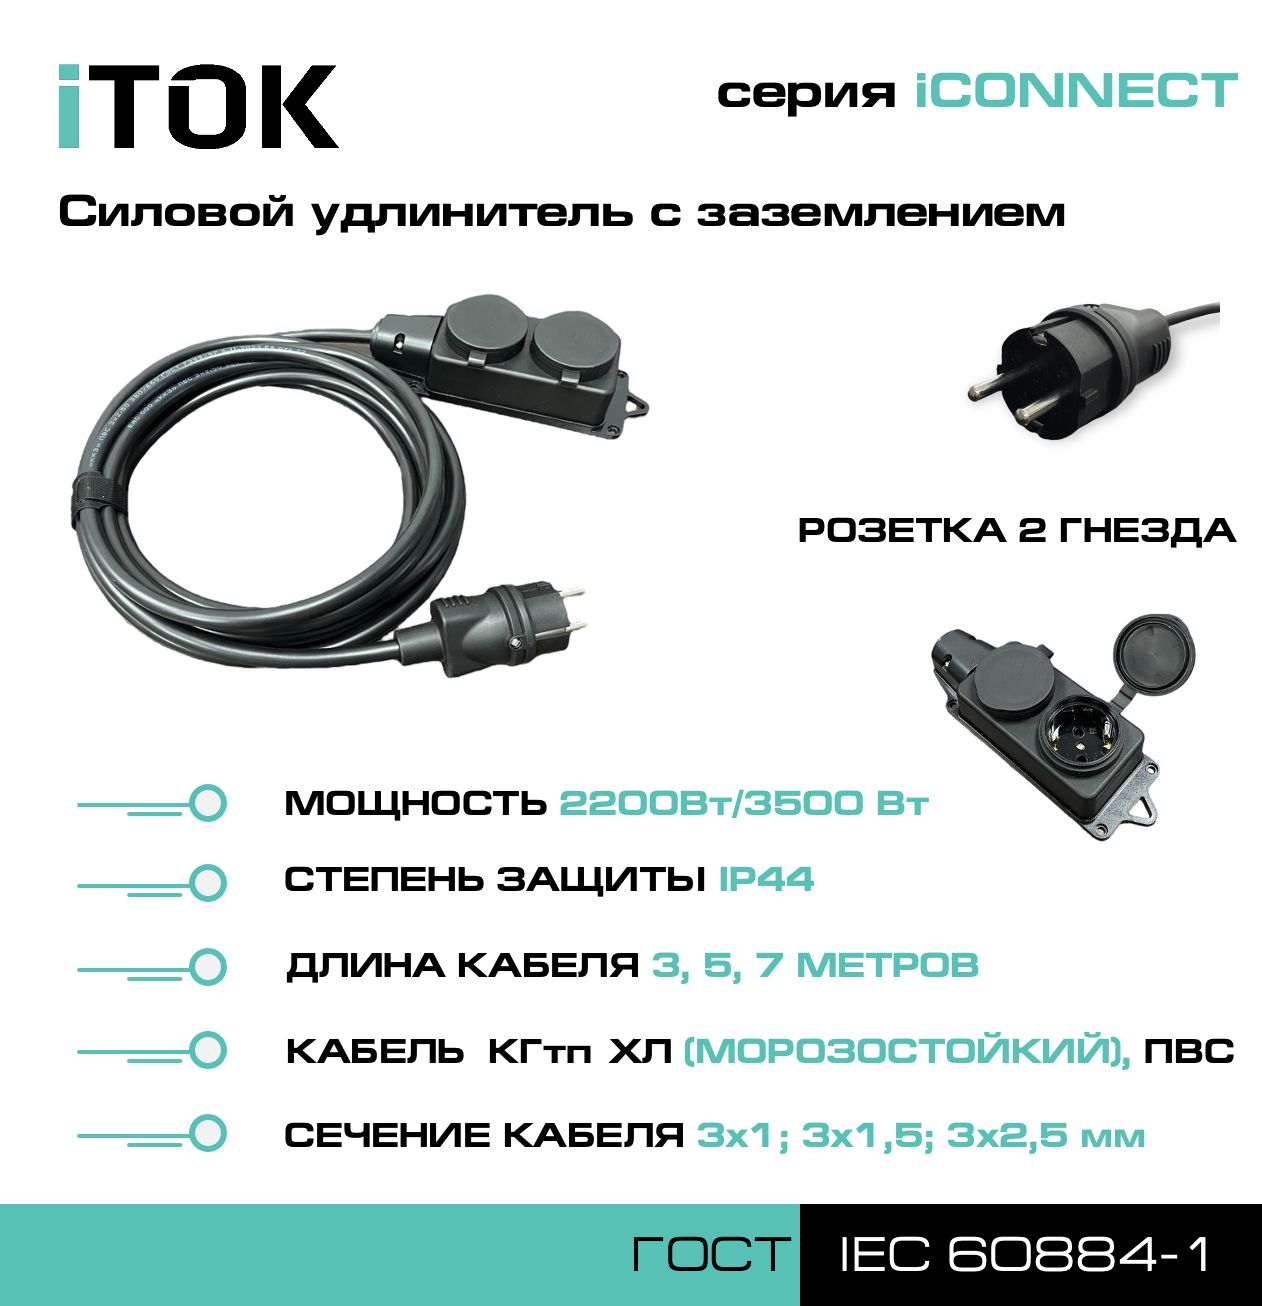 Удлинитель с заземлением серии iTOK iCONNECT КГтп-ХЛ 3х1,5 мм 2 гнезда IP44 7 м